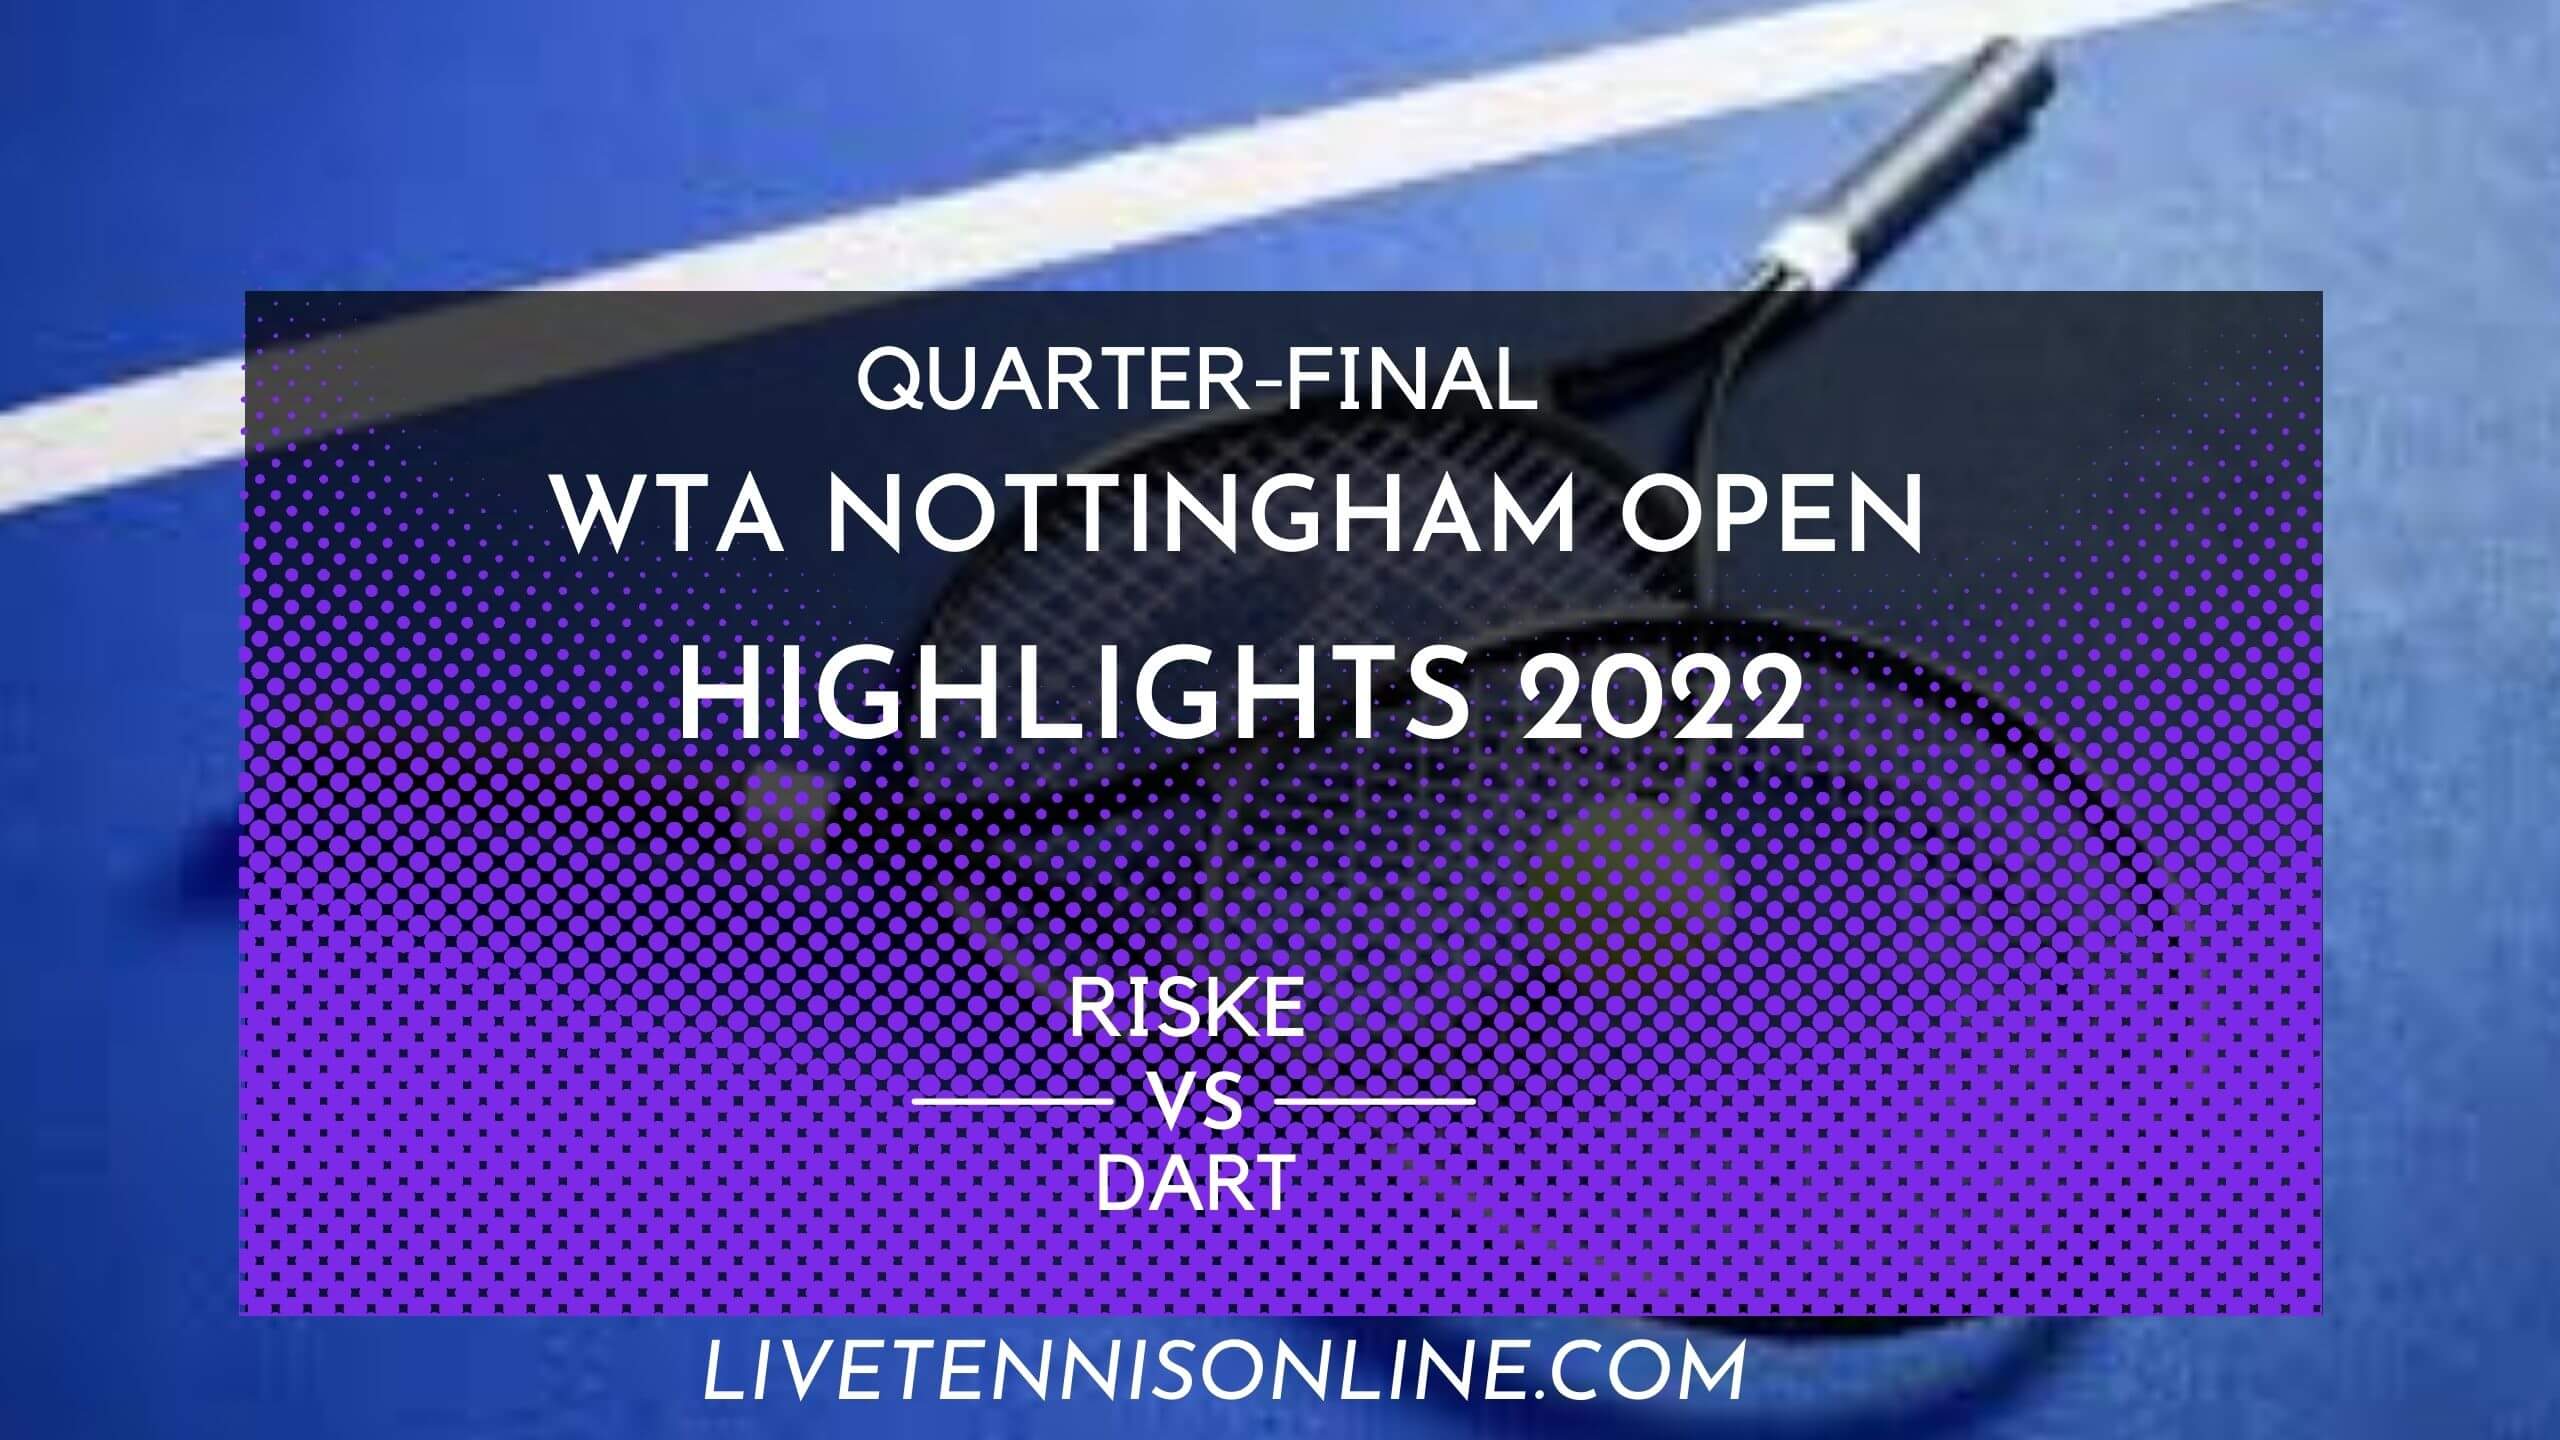 Riske Vs Dart QF Highlights 2022 Nottingham Open